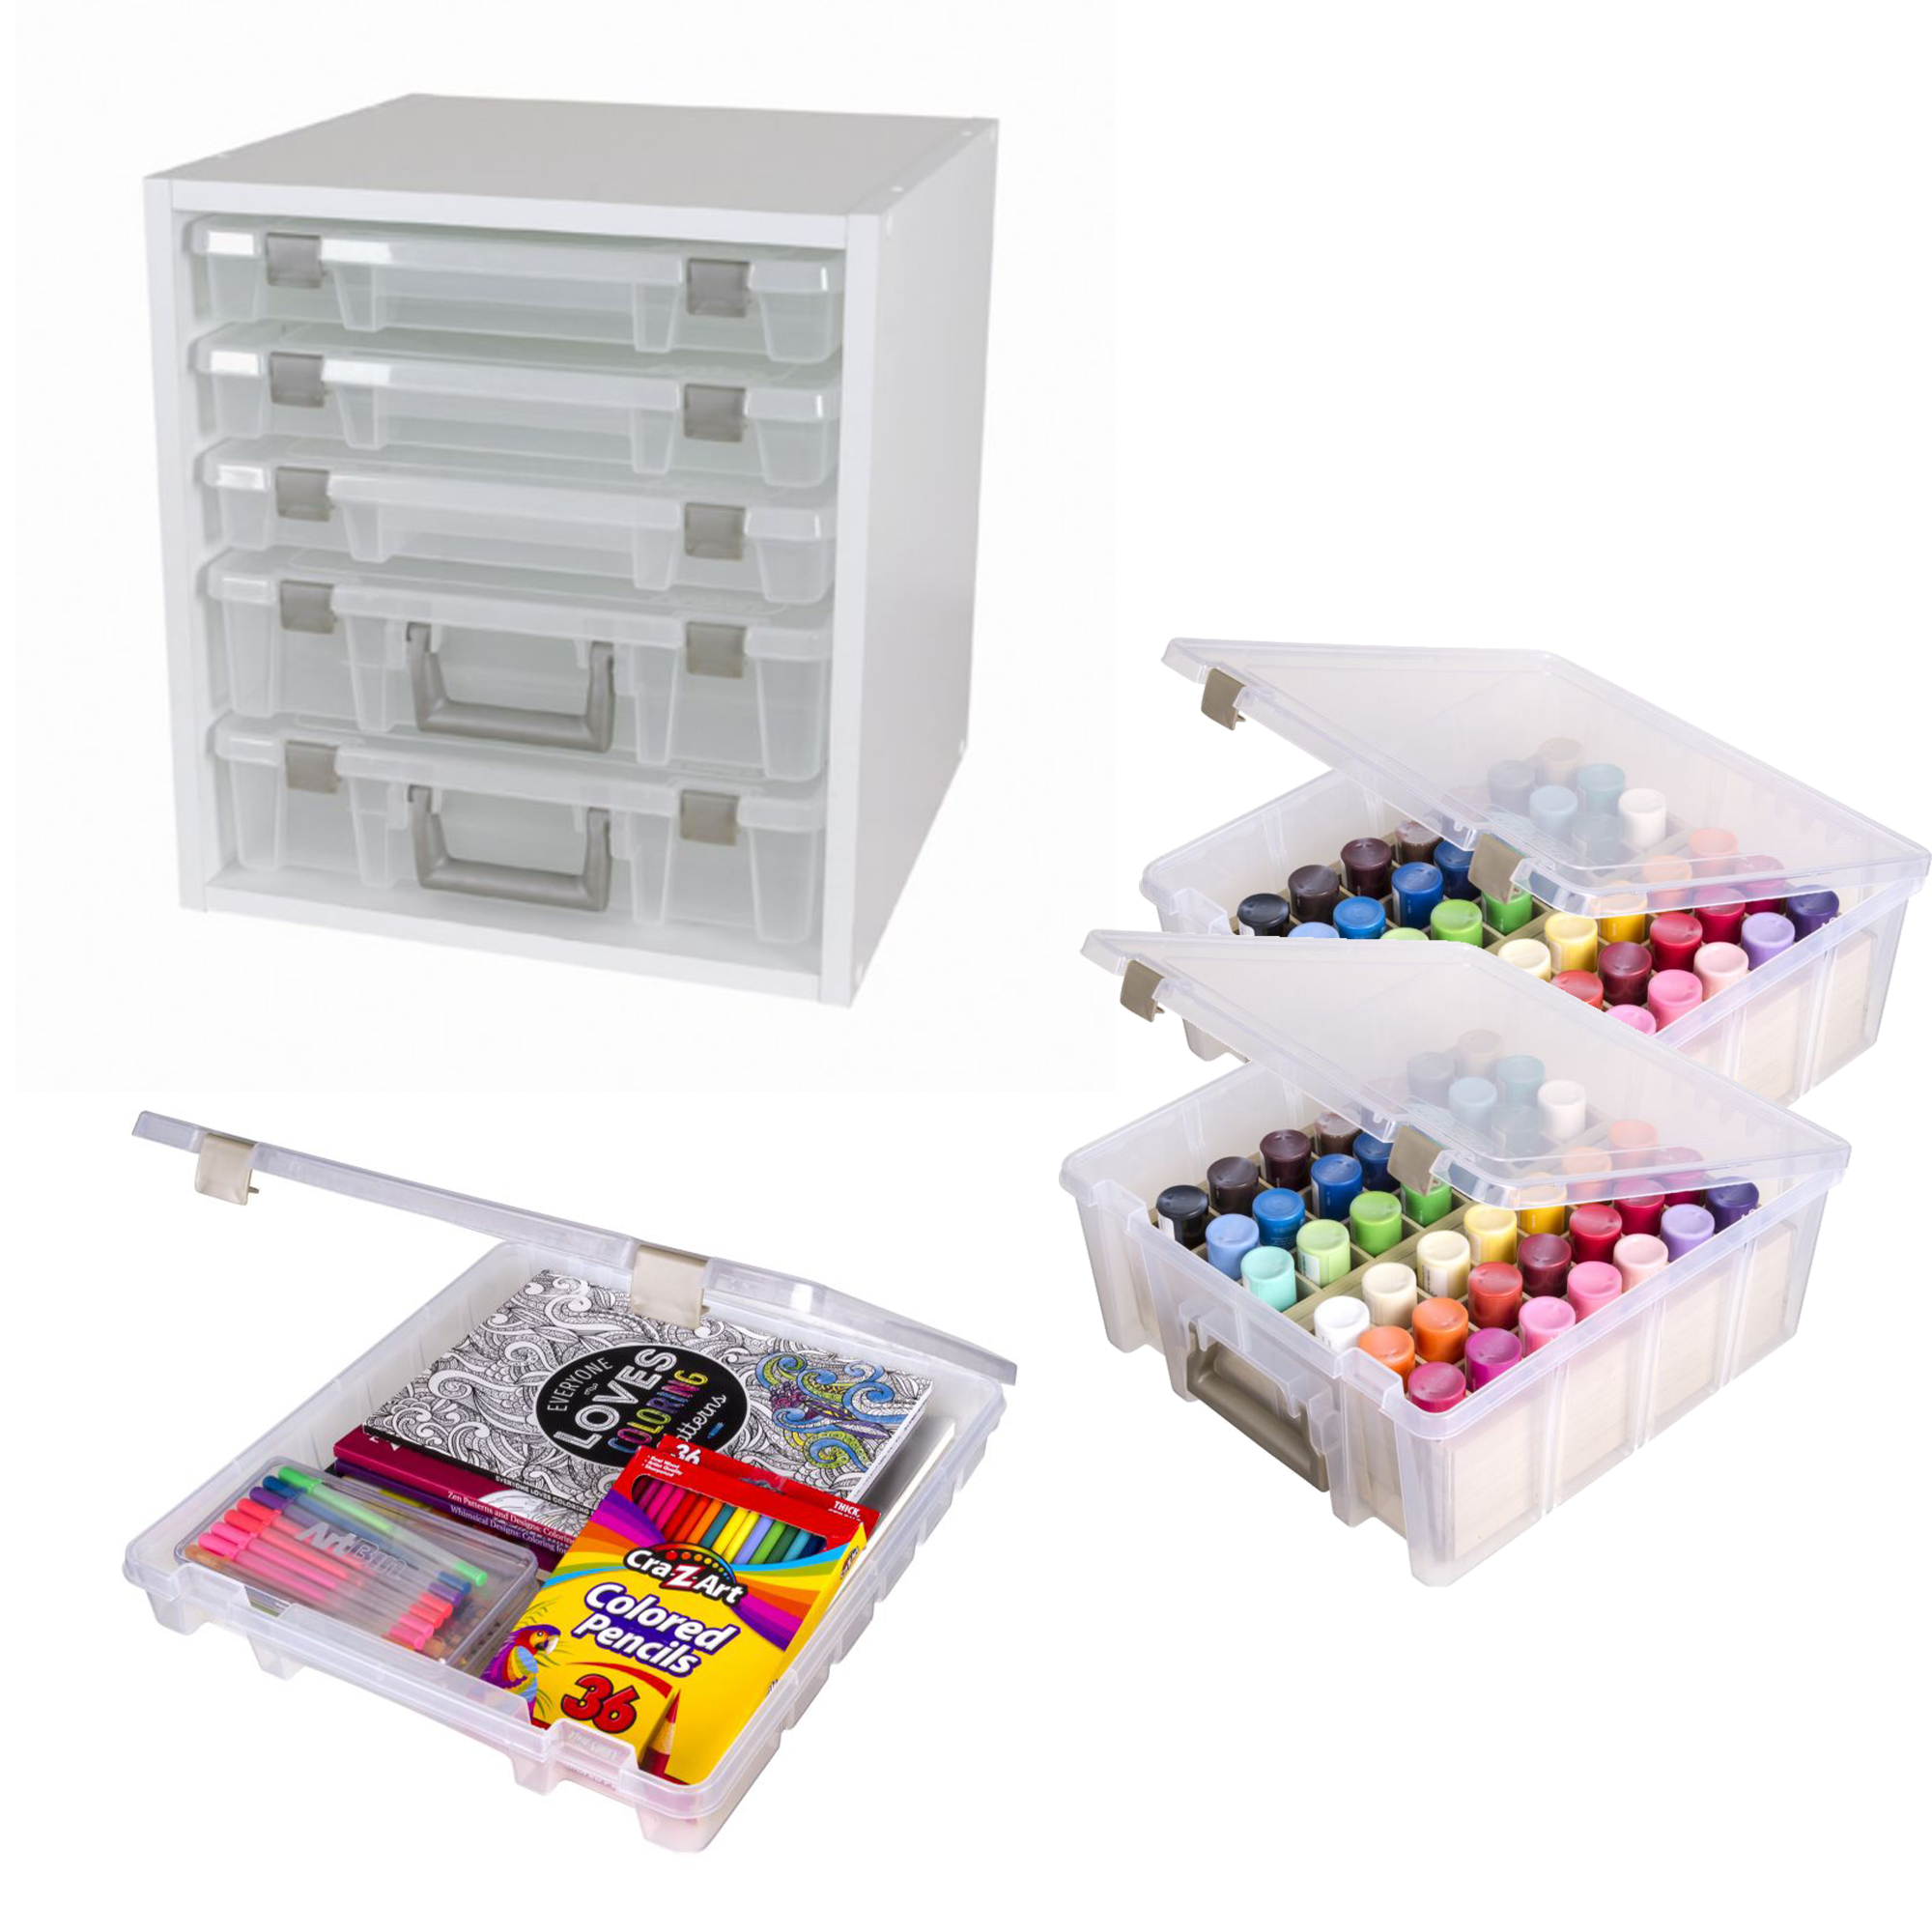 ArtBin - Pencil/Accessory Boxes - Single-Compartment Box - Sam Flax Atlanta